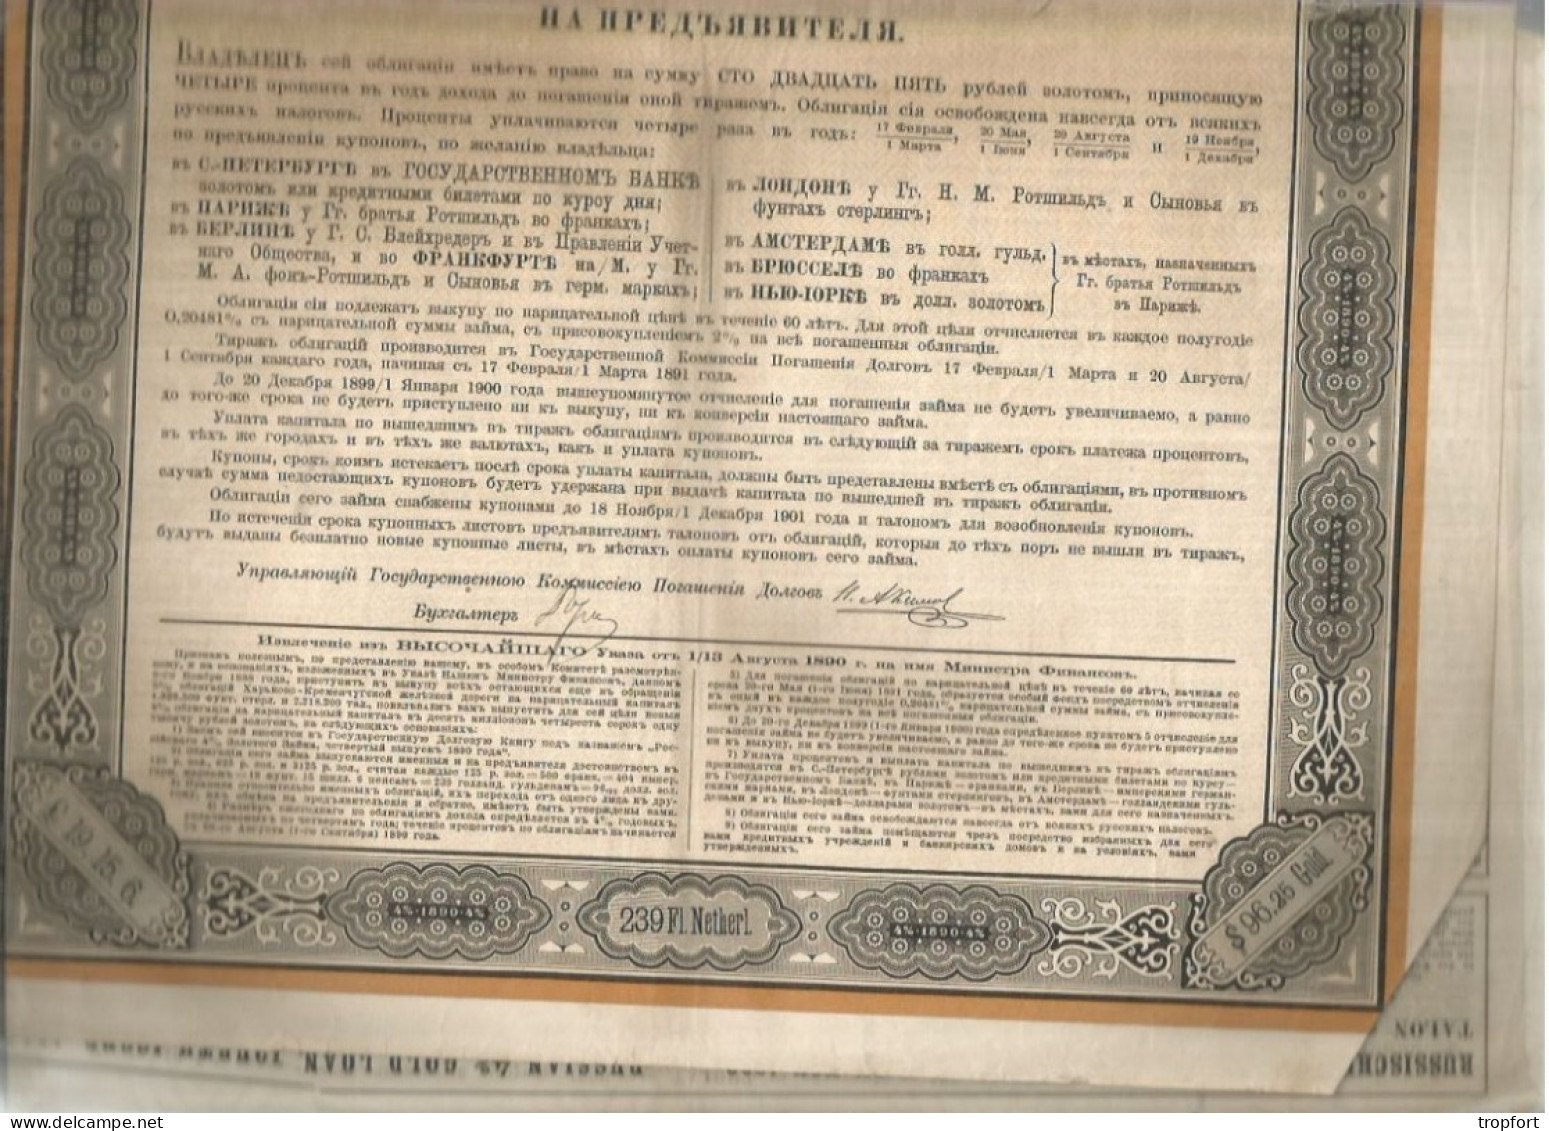 Gt Impérial De Russie Emprunt Russe 4% OR  4ème Émission 1890 --------- Obligation De 125 Roubles OR - Russie